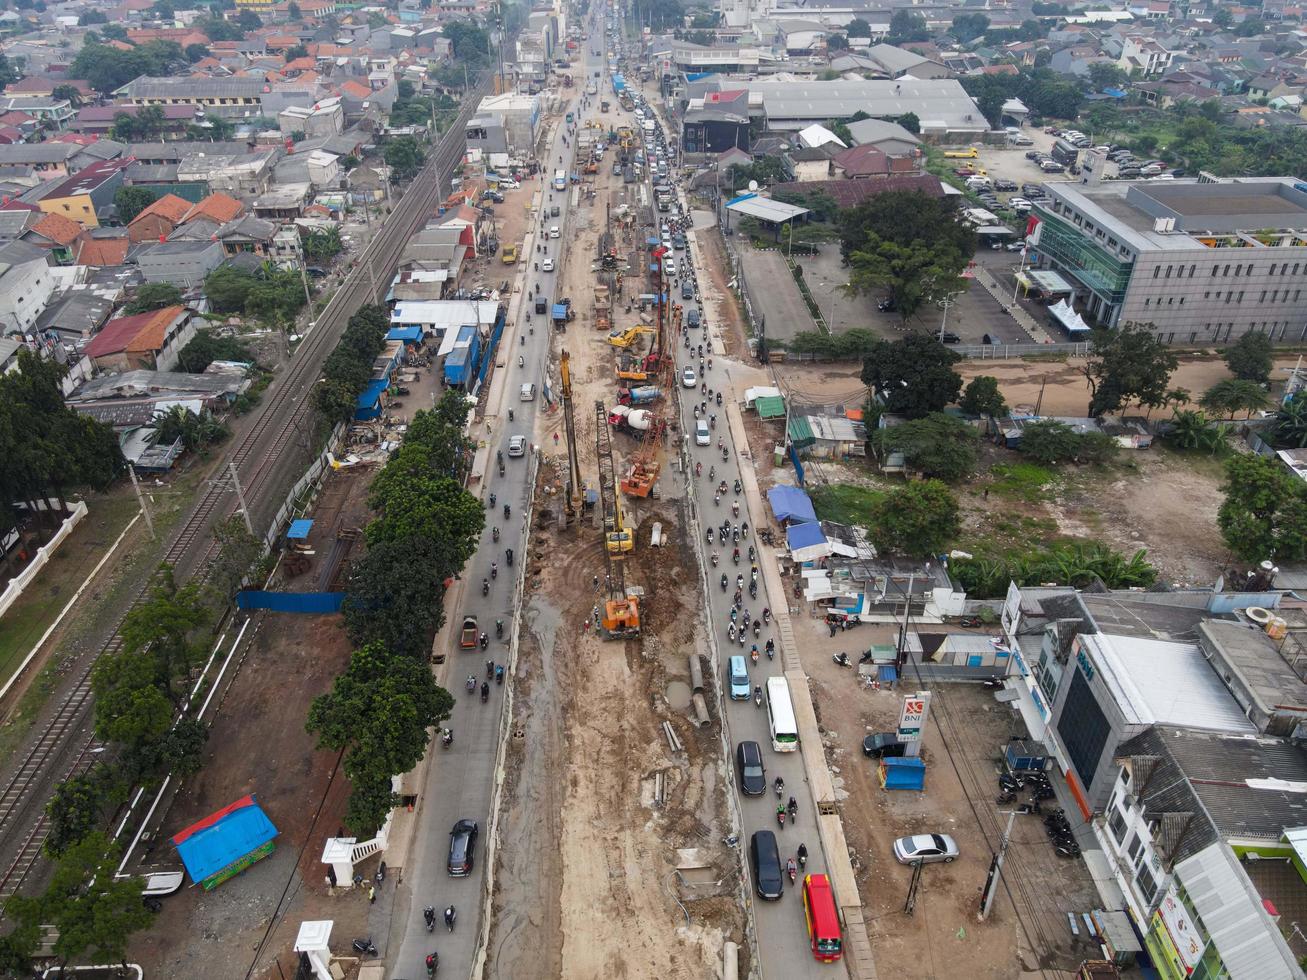 bekasi, indonesia 2021- atasco de tráfico en las calles contaminadas de bekasi con el mayor número de vehículos de motor y congestión del tráfico foto